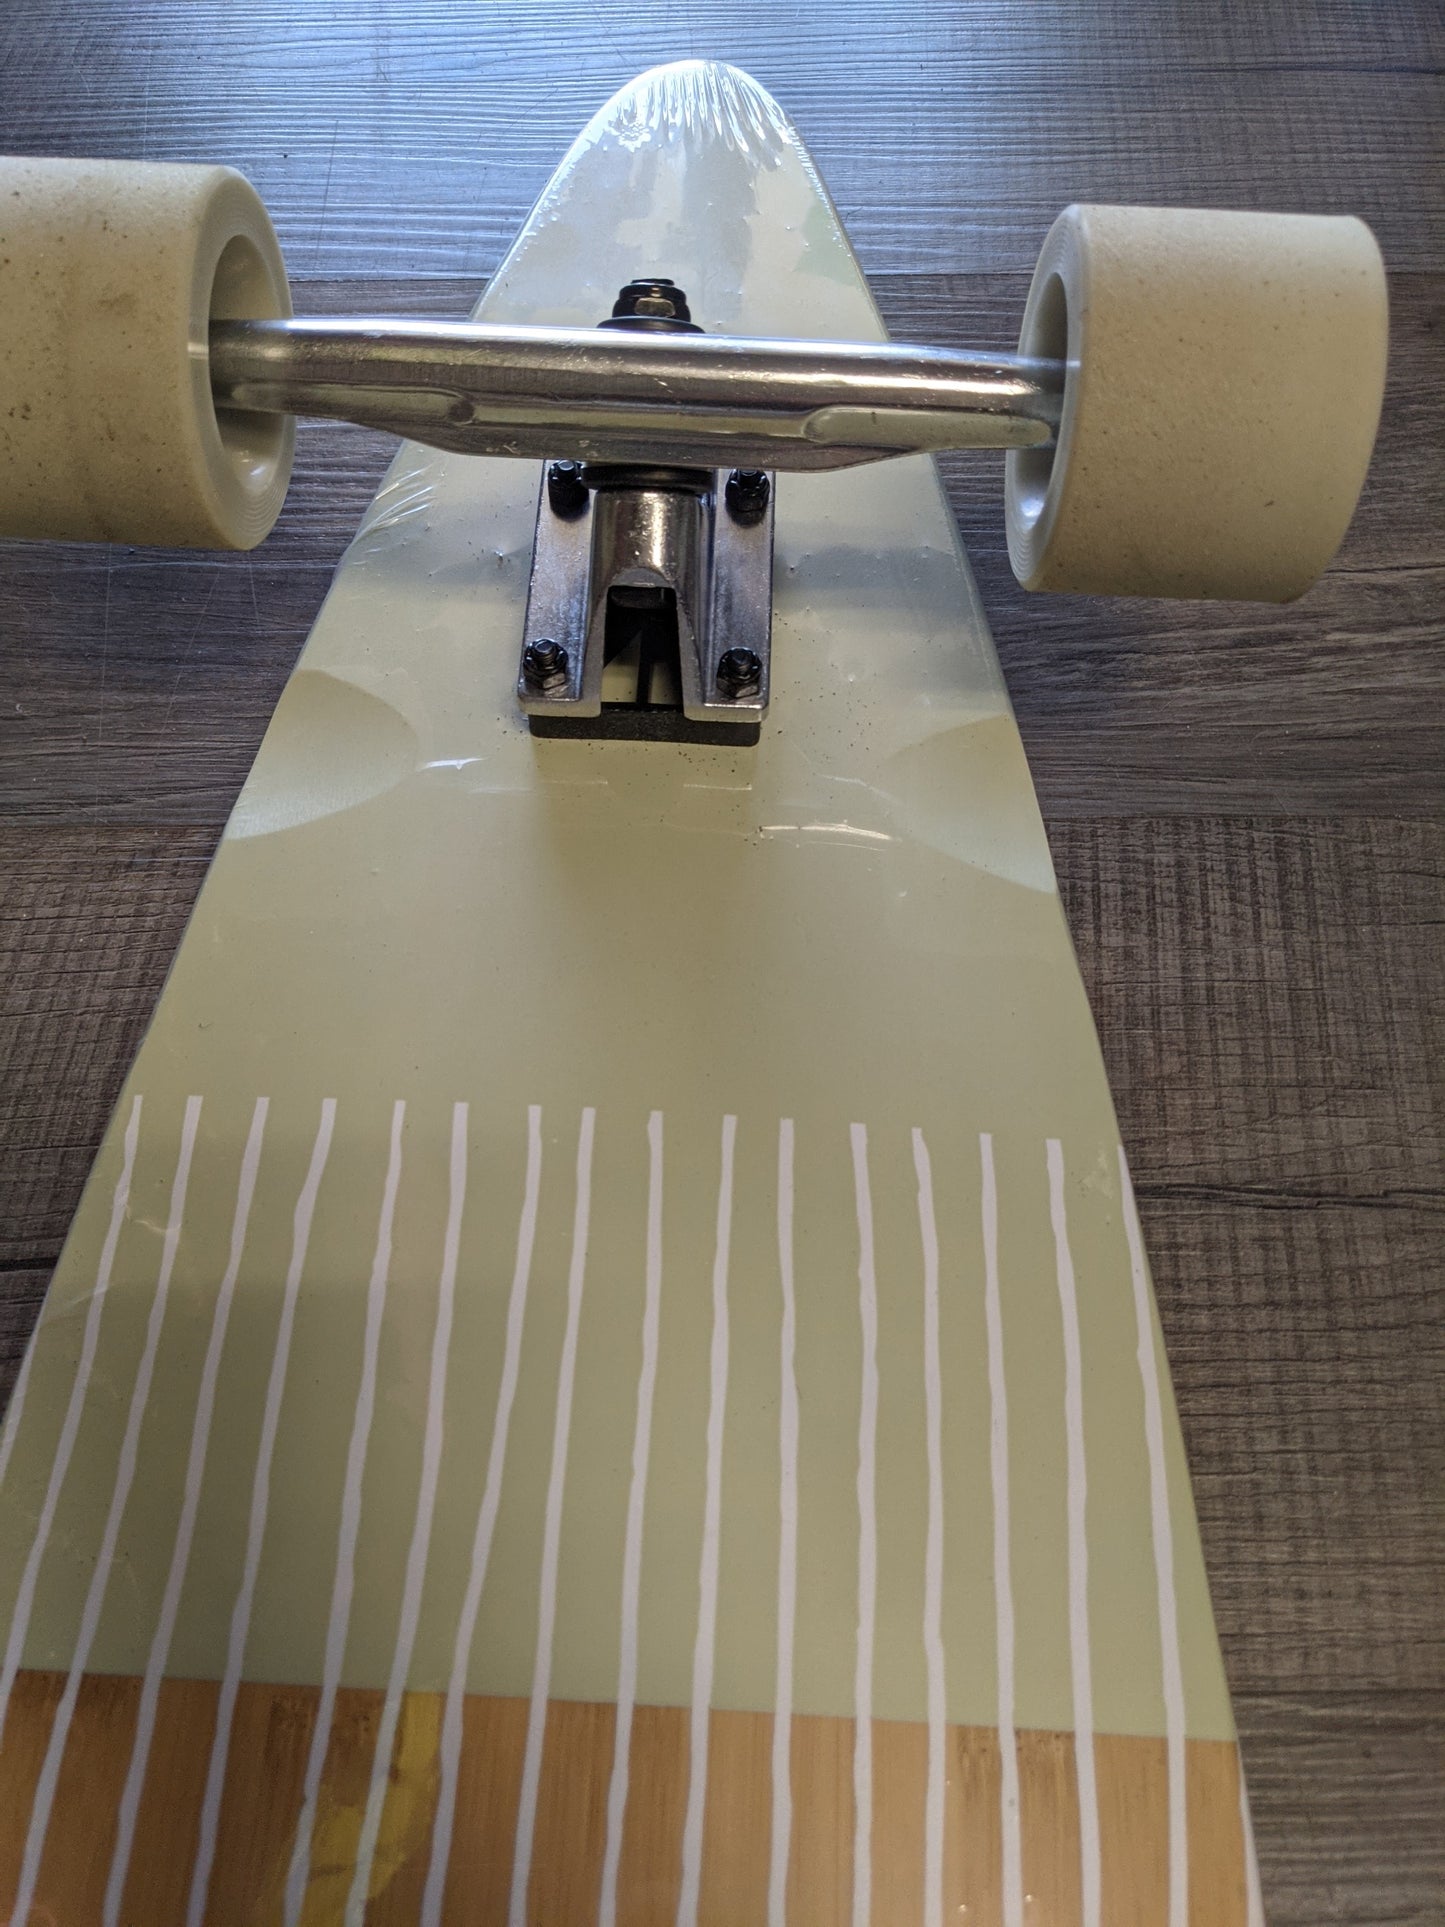 Retrospec New Zed Pintail Skateboard, Bn/Gn/Wt, Size: 41" Longboard